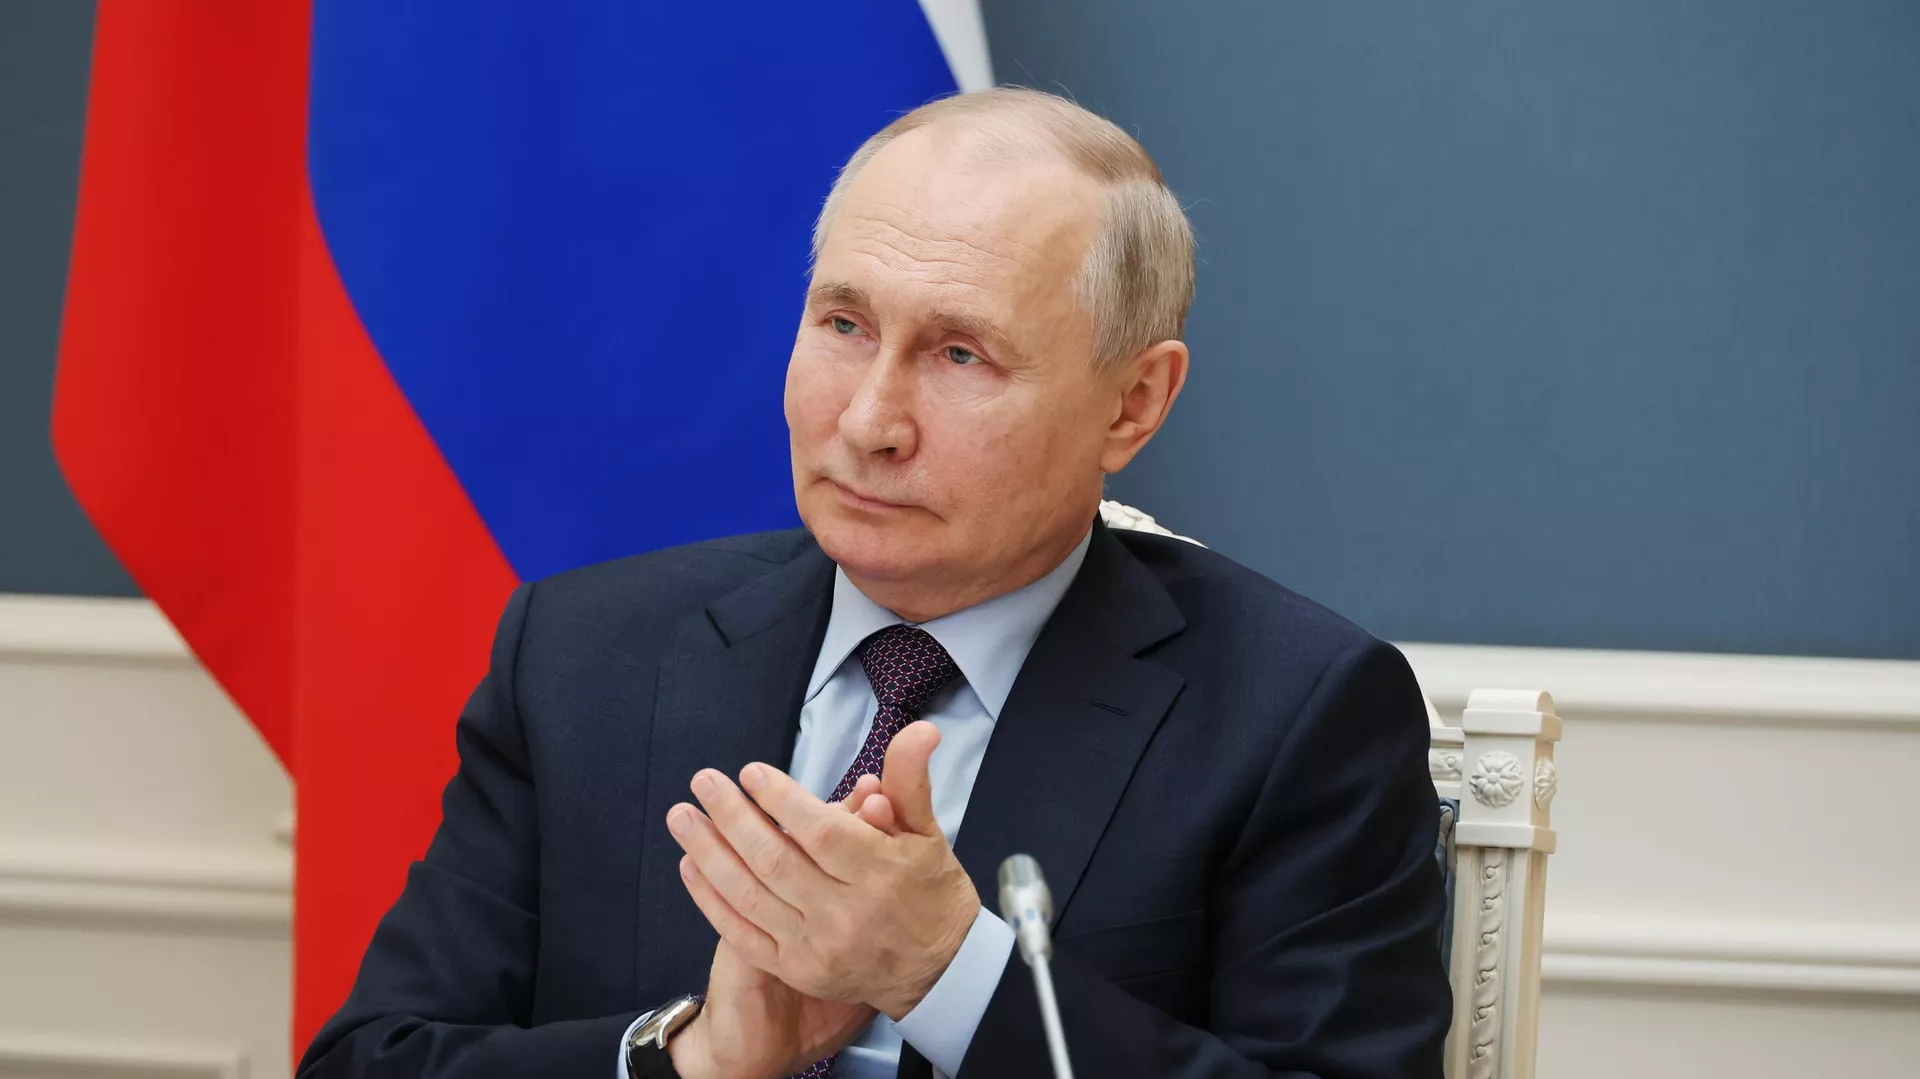 ВЦИОМ: почти 81 процент граждан России доверяют президенту Владимиру Путину